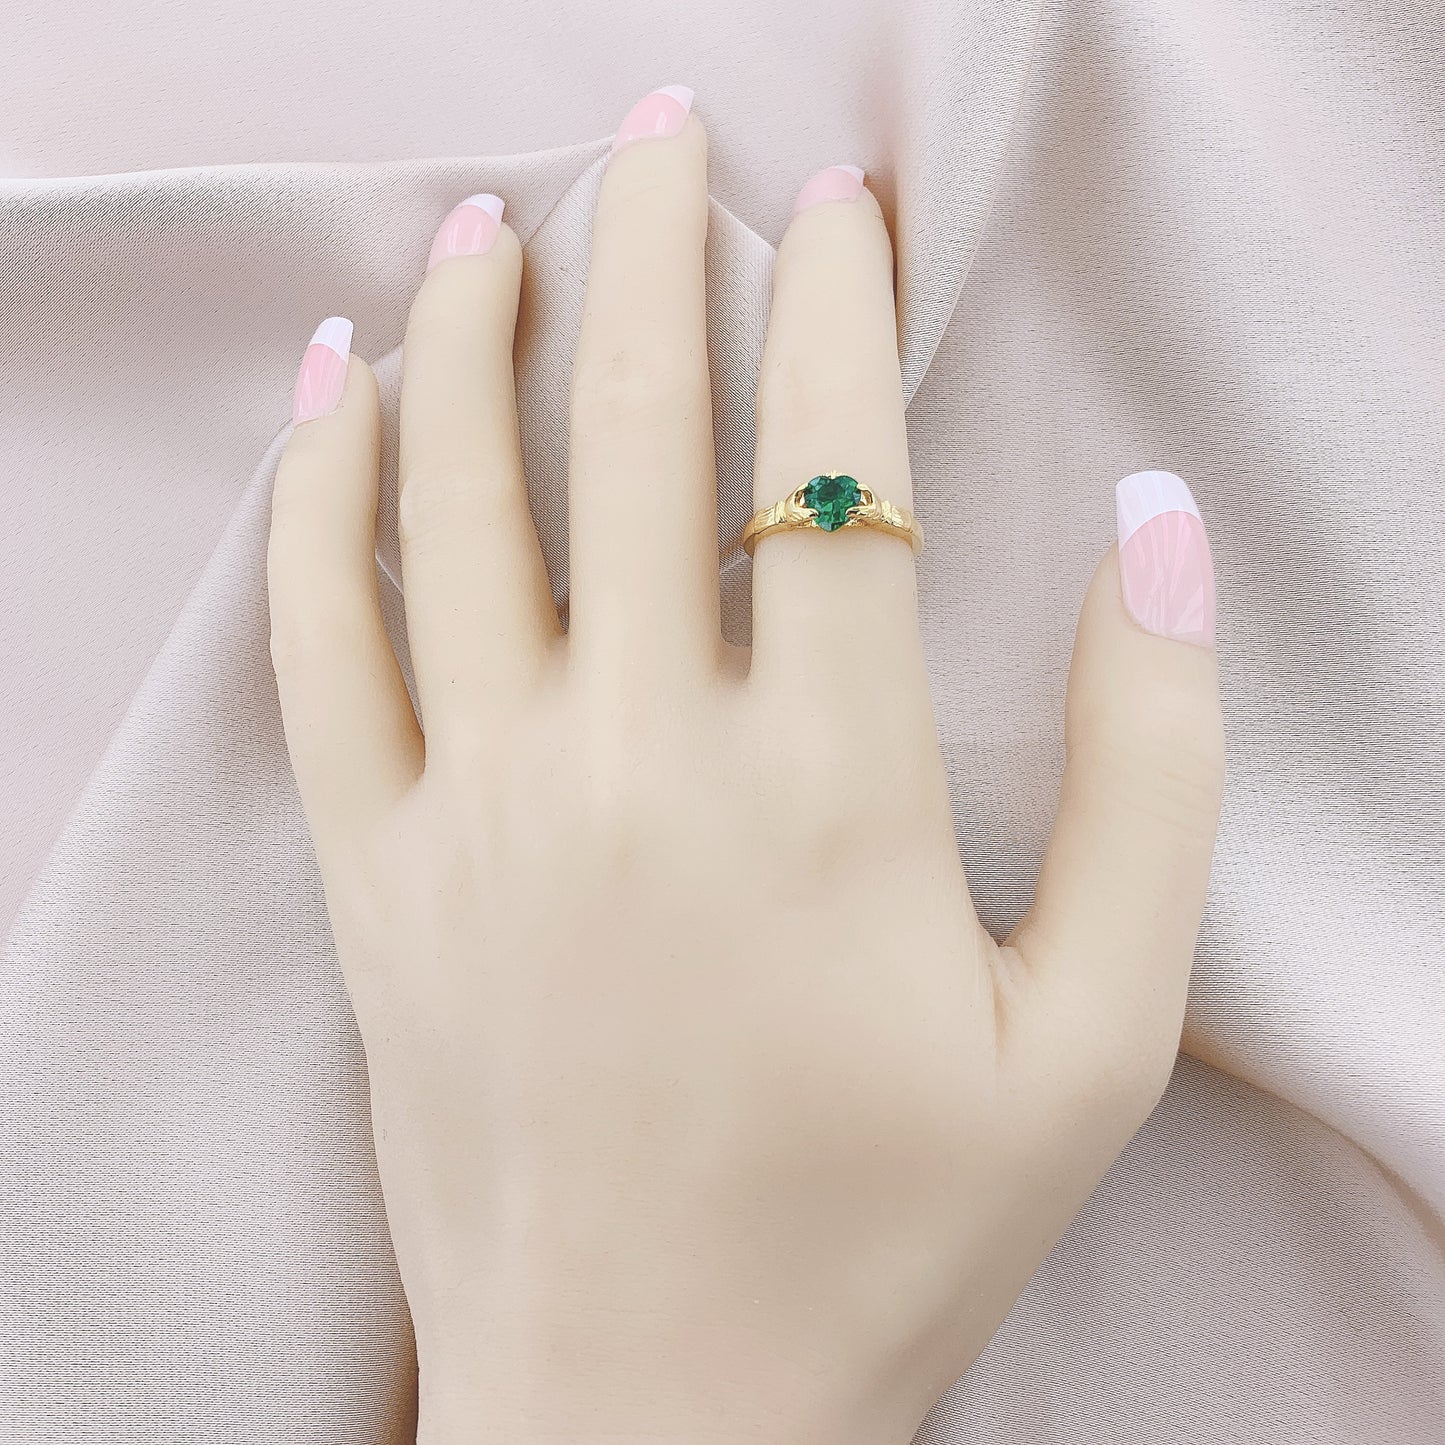 Emerald Claddagh Ring